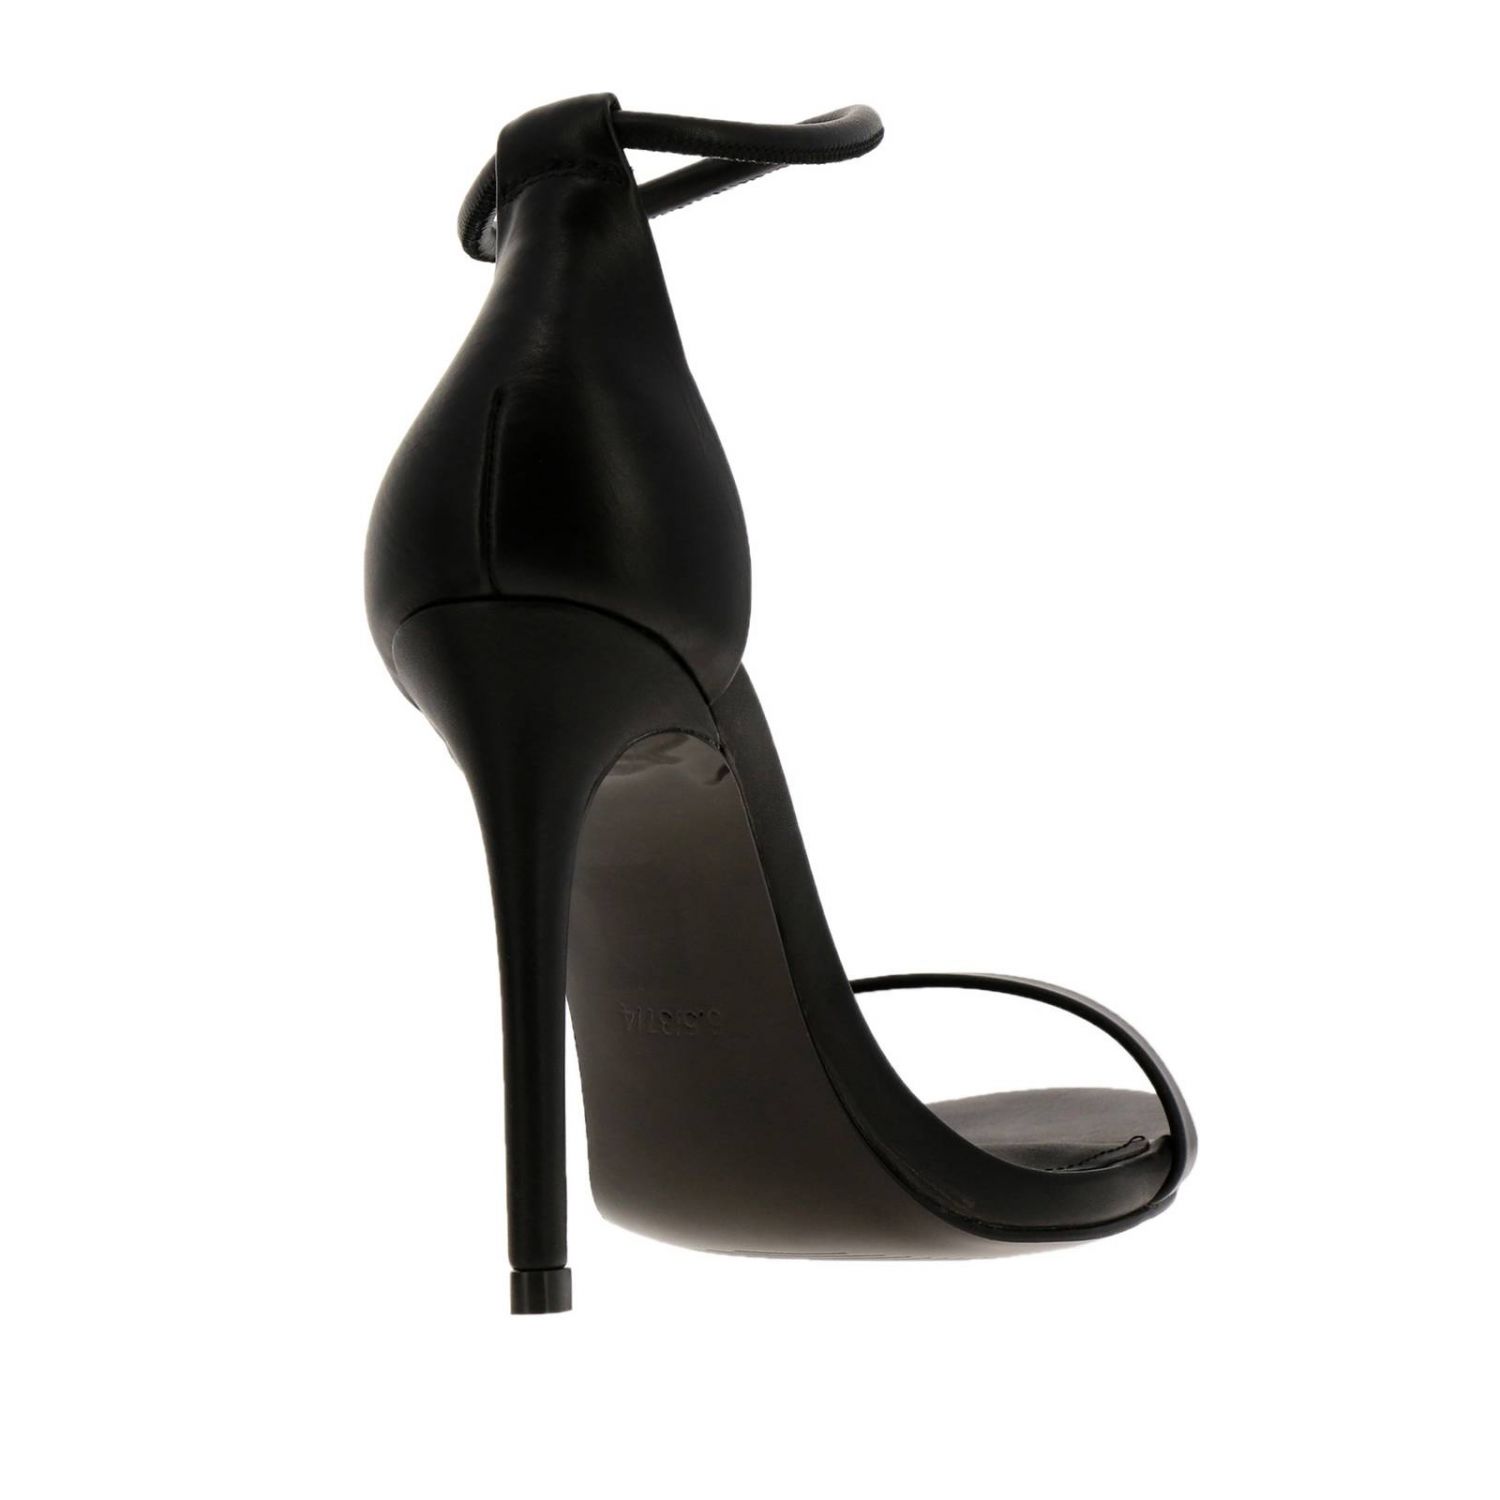 Steve Madden Outlet: heeled sandals for woman - Black | Steve Madden ...